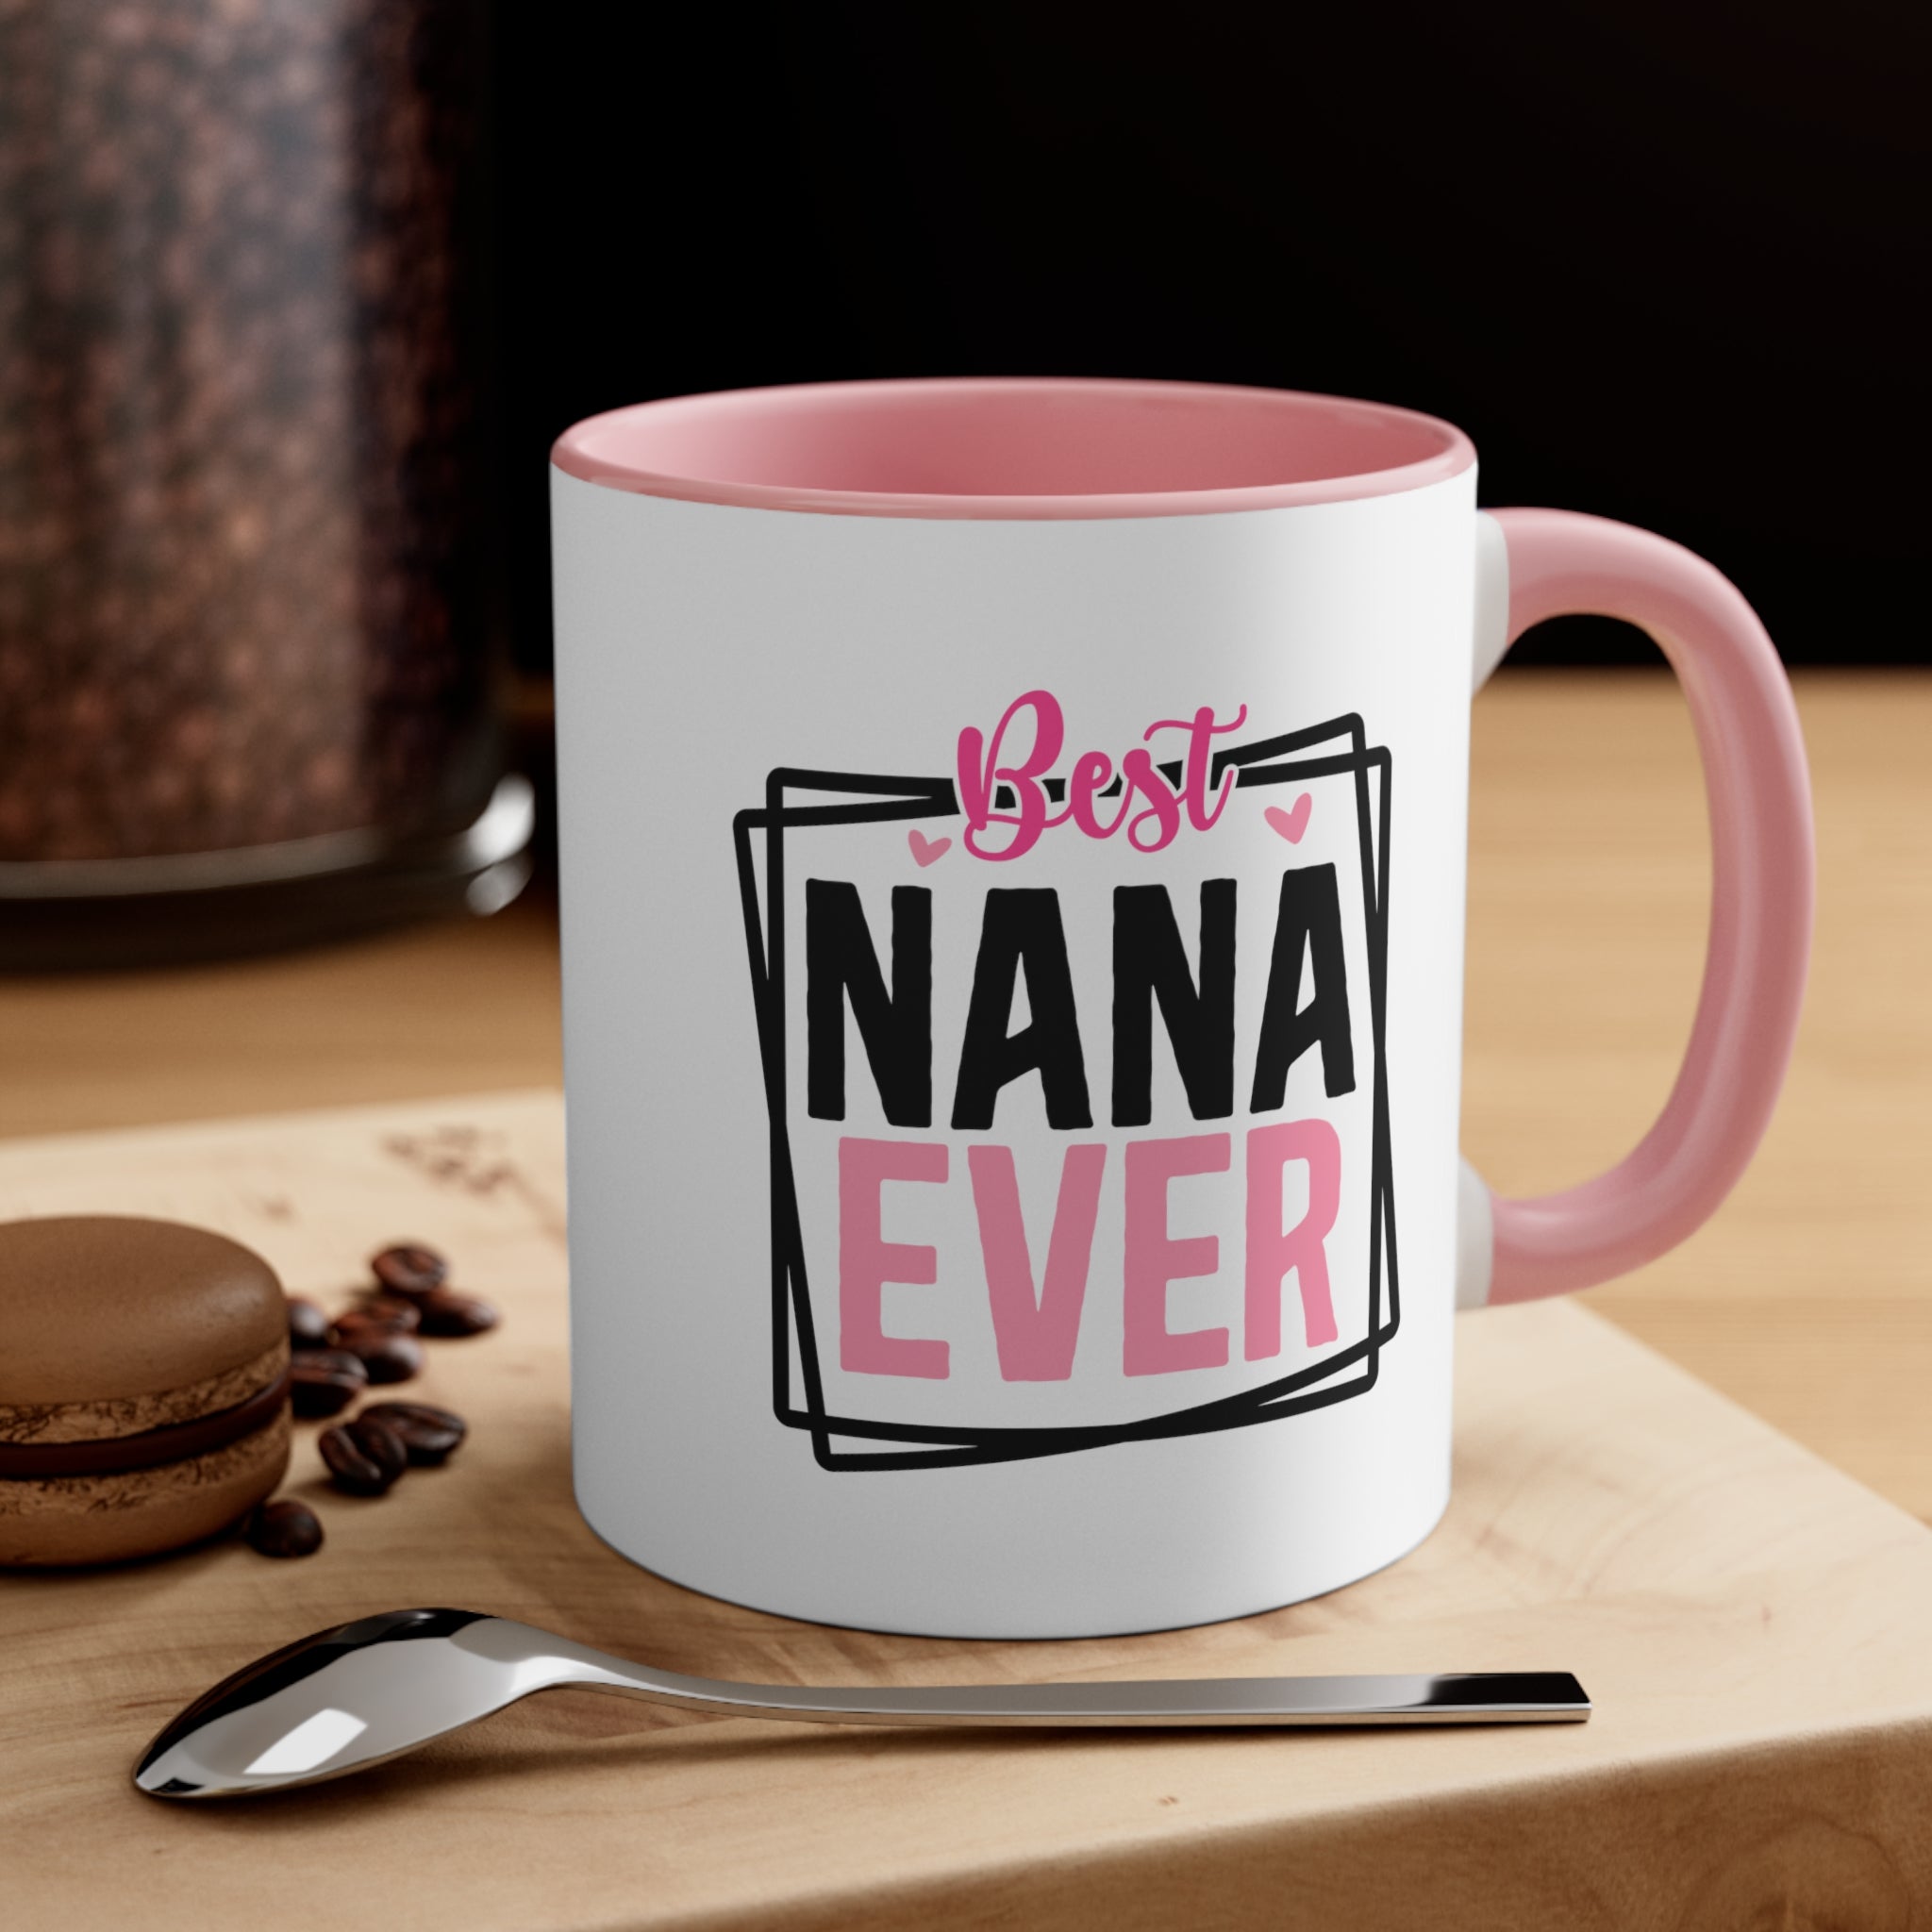 Best Nana Ever Coffee Mug, 11oz Grandma Gift Grandmother Cup Mother's Day Birthday Christmas Gift For Grandma